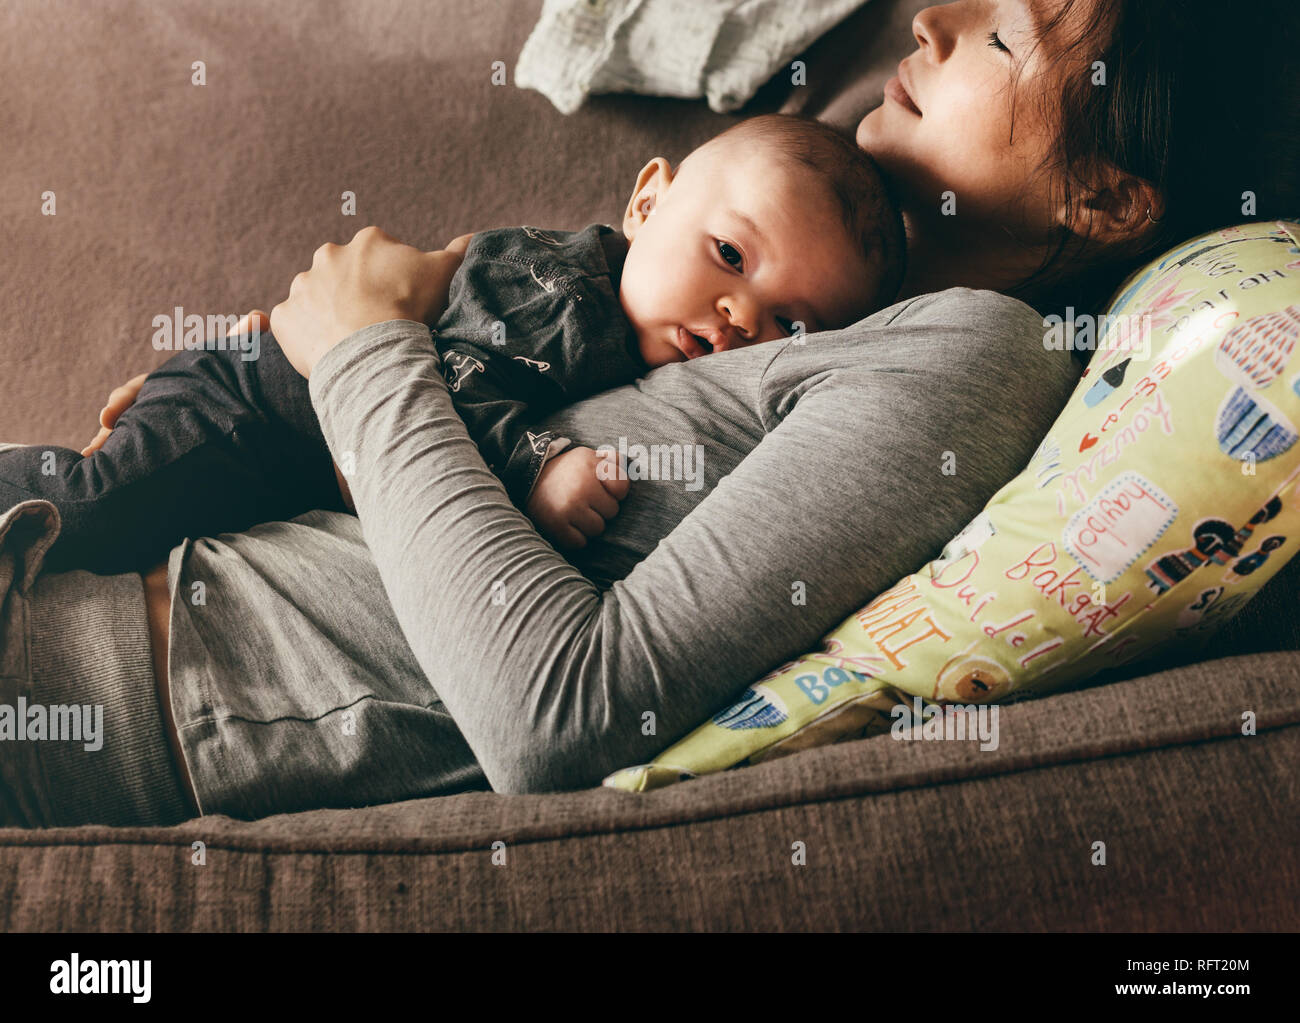 Mère qui reste dormir sur un canapé avec son bébé sur sa poitrine. Gros plan d'une femme couchée sur un canapé avec son bébé posé sur elle. Banque D'Images